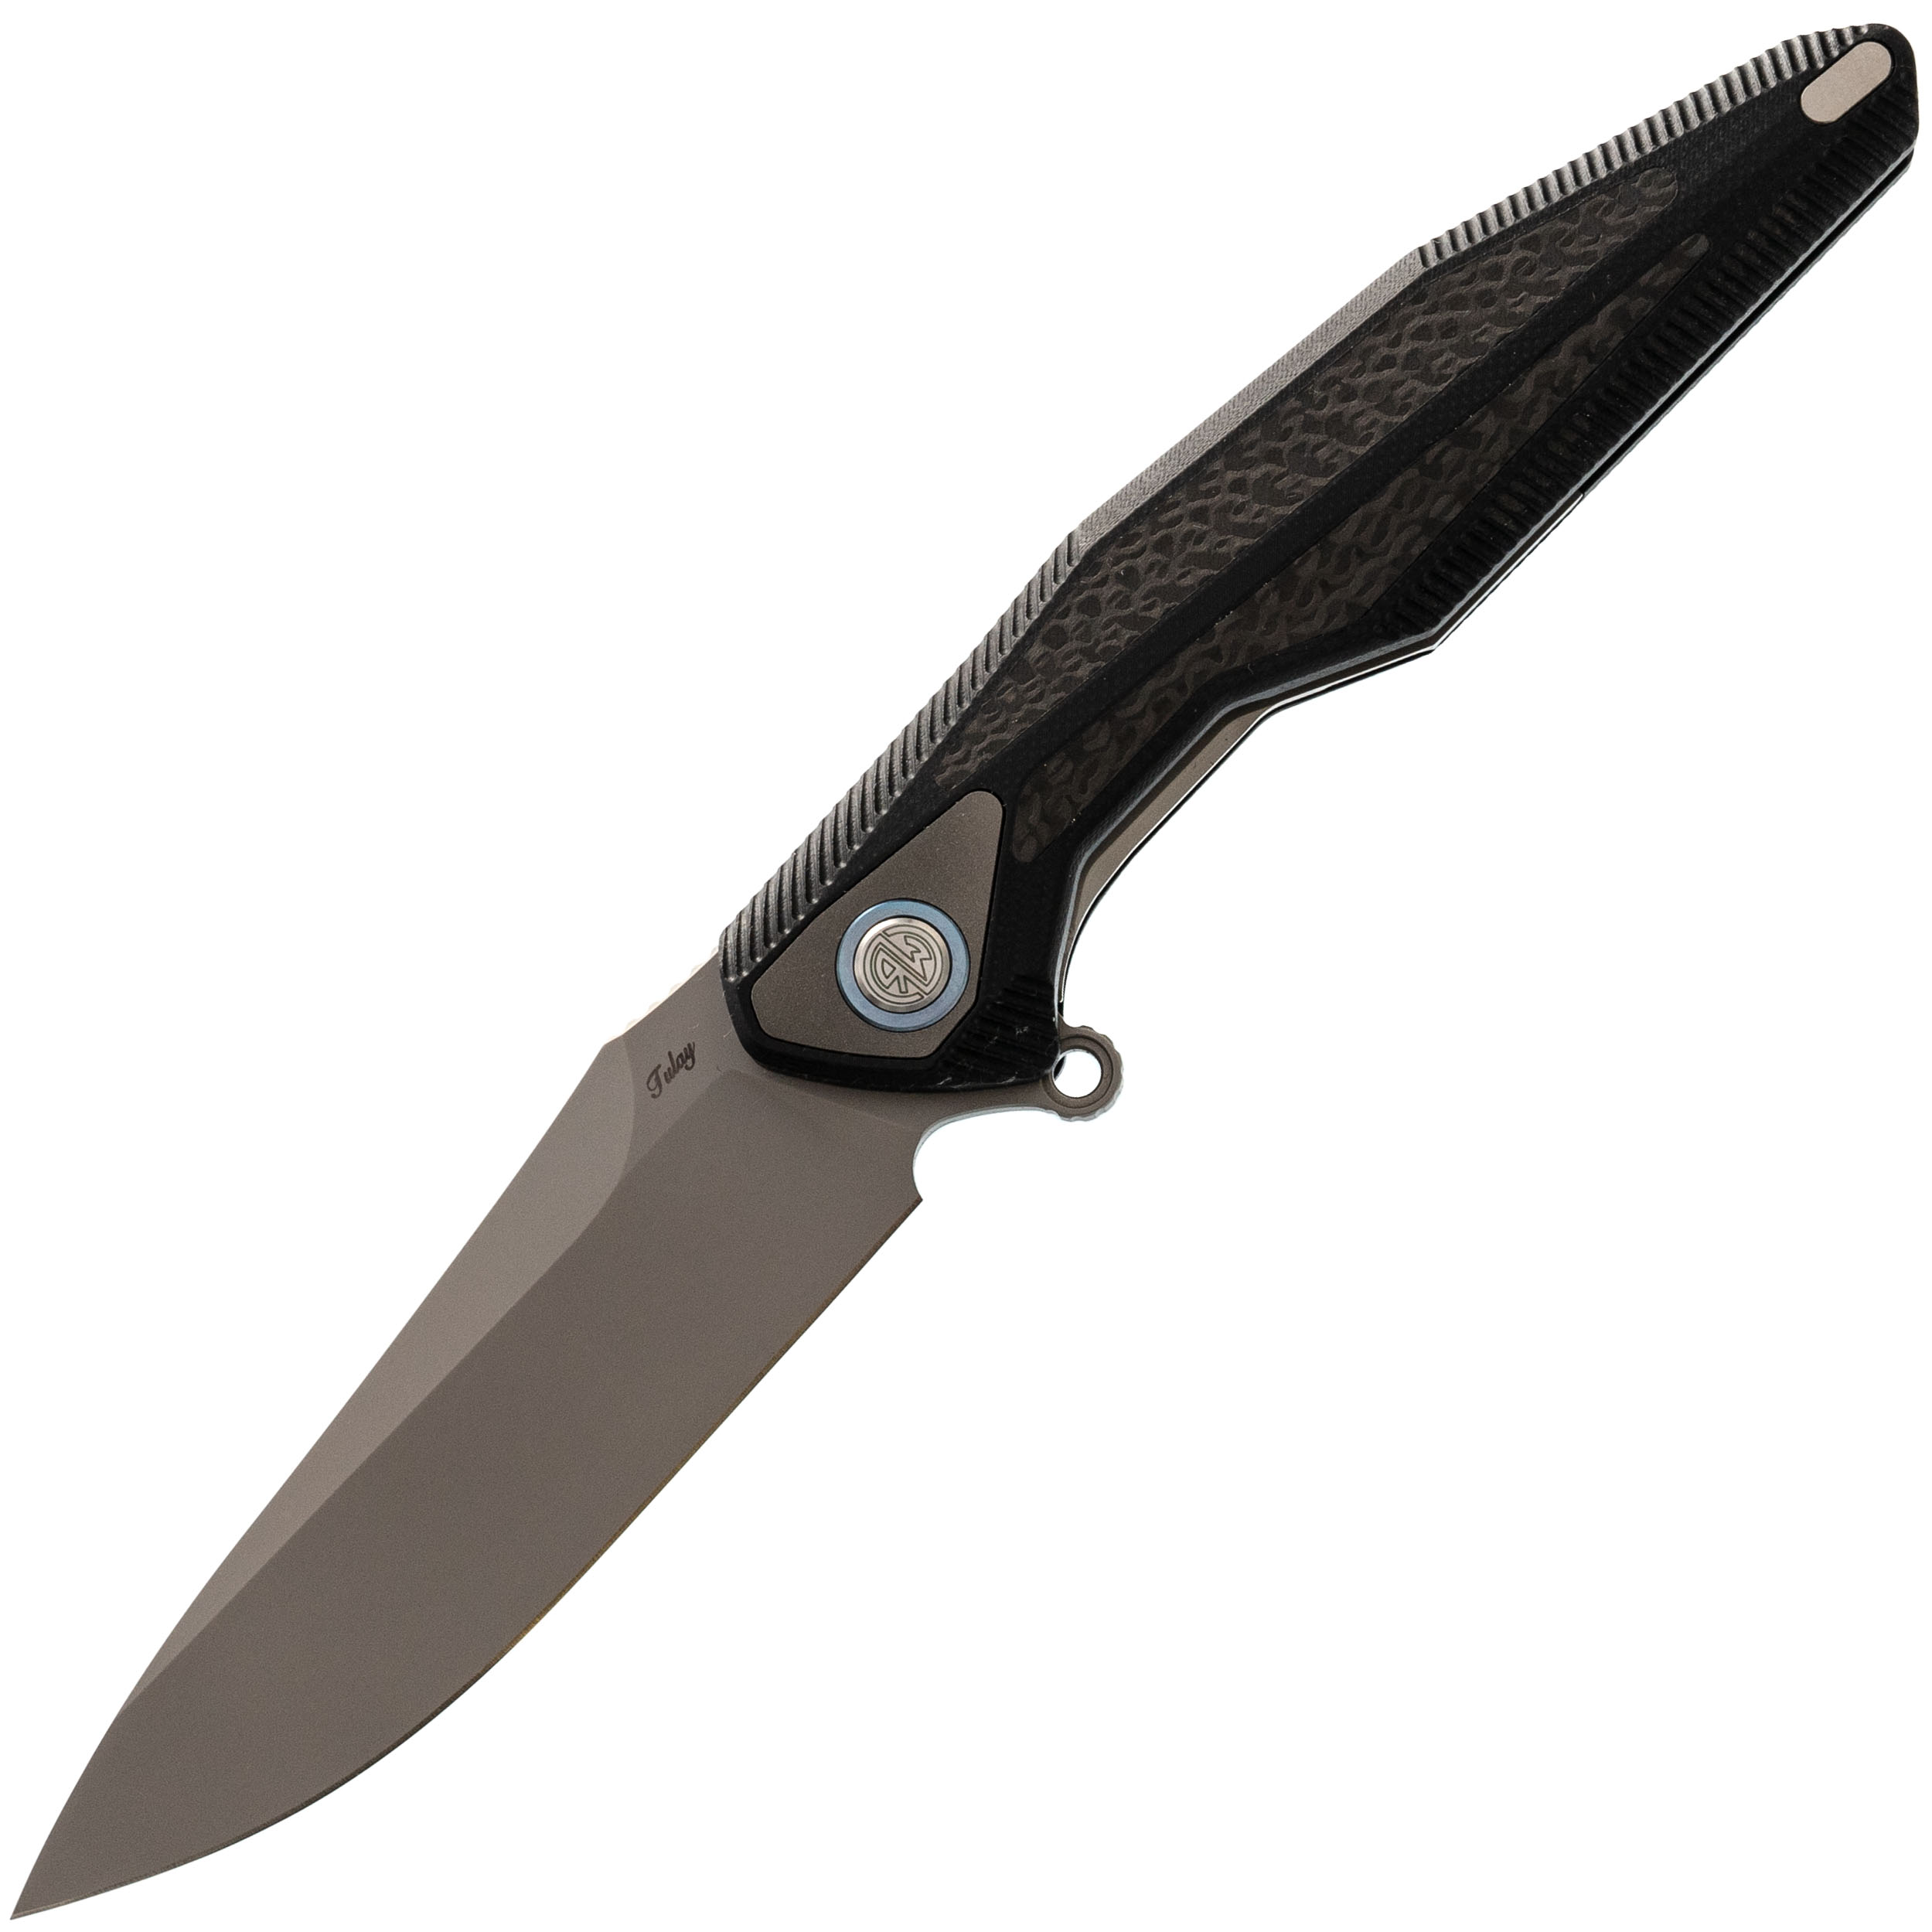 Нож складной Tulay Rikeknife, сталь 154CM, Black G10/Carbon Fiber нож складной mod hawk point man сталь aus 8 рукоять стеклотекстолит g 10 420j2